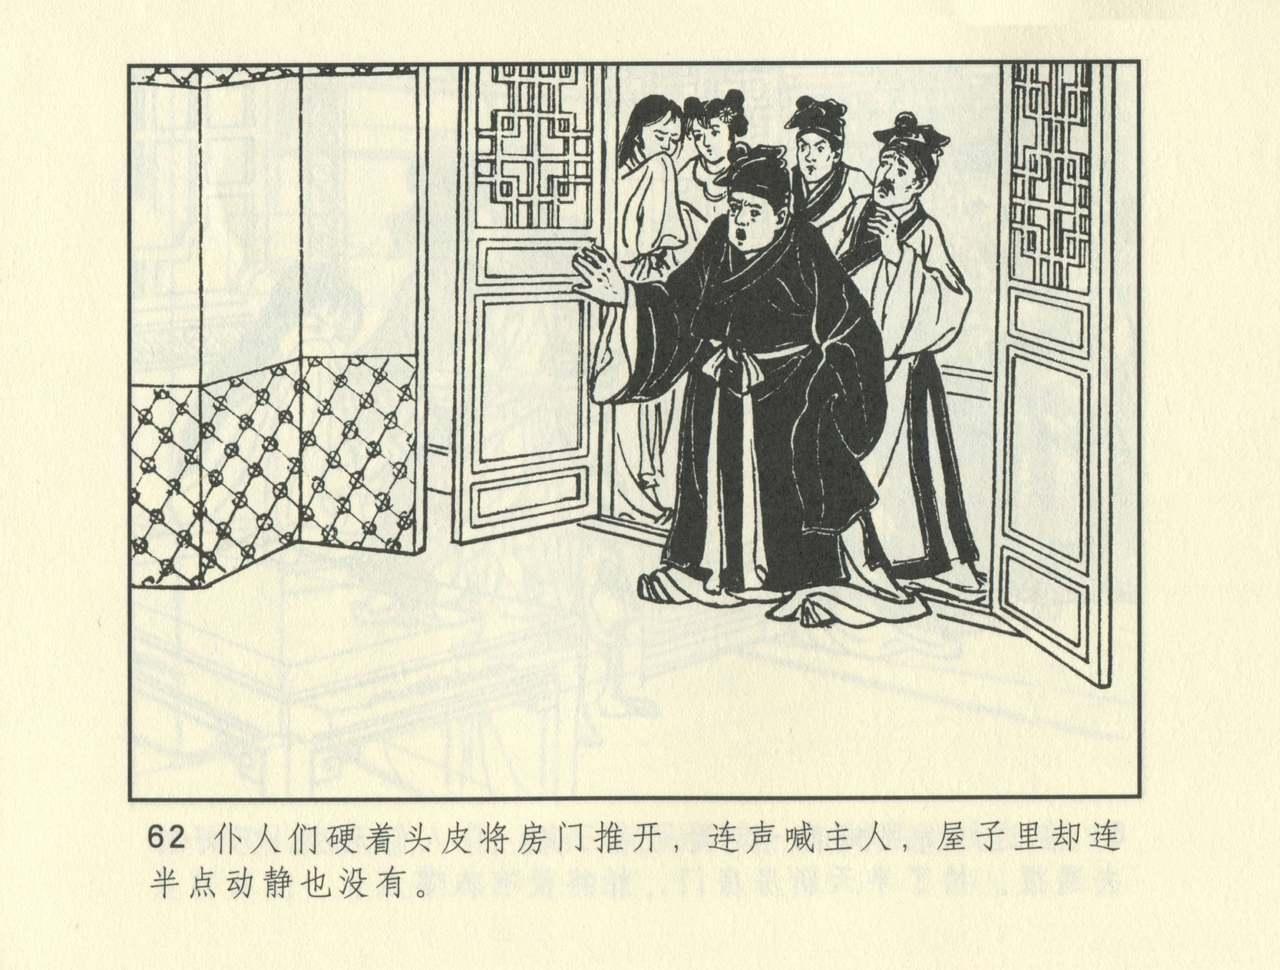 聊斋志异 张玮等绘 天津人民美术出版社 卷二十一 ~ 三十 271